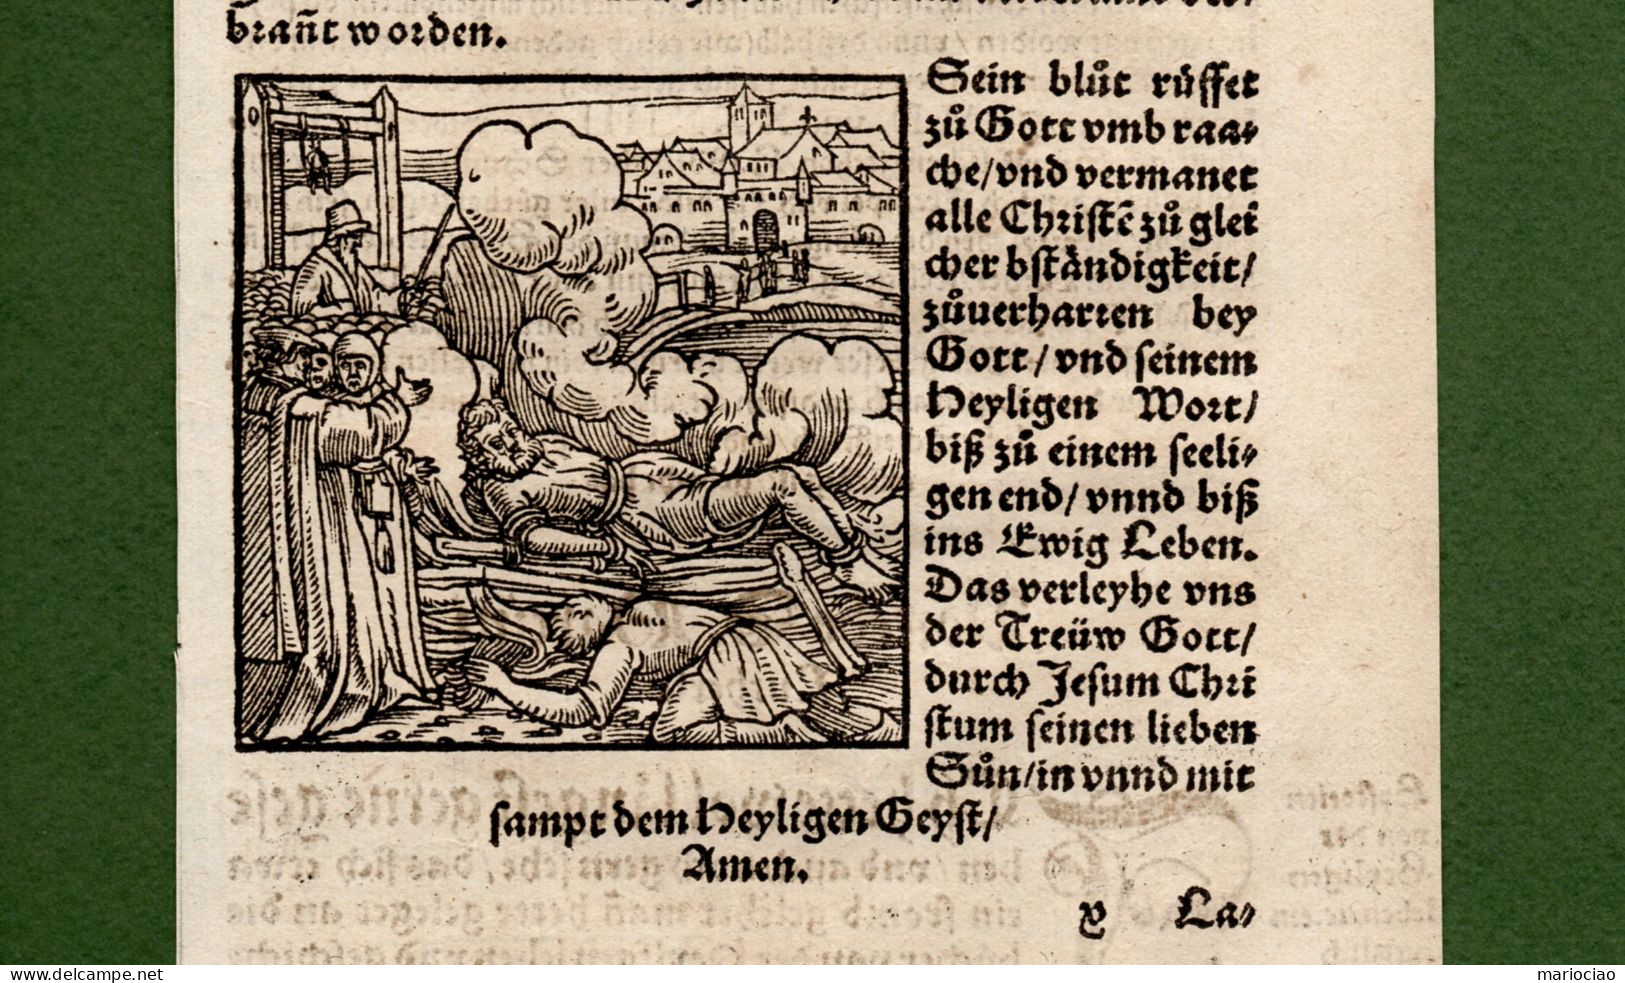 ST-DE Martin Luthers Protestantische Reformation Tod Hinrichtungen Holzschnitt 1557 Ludwig Rabus #B - Stiche & Gravuren